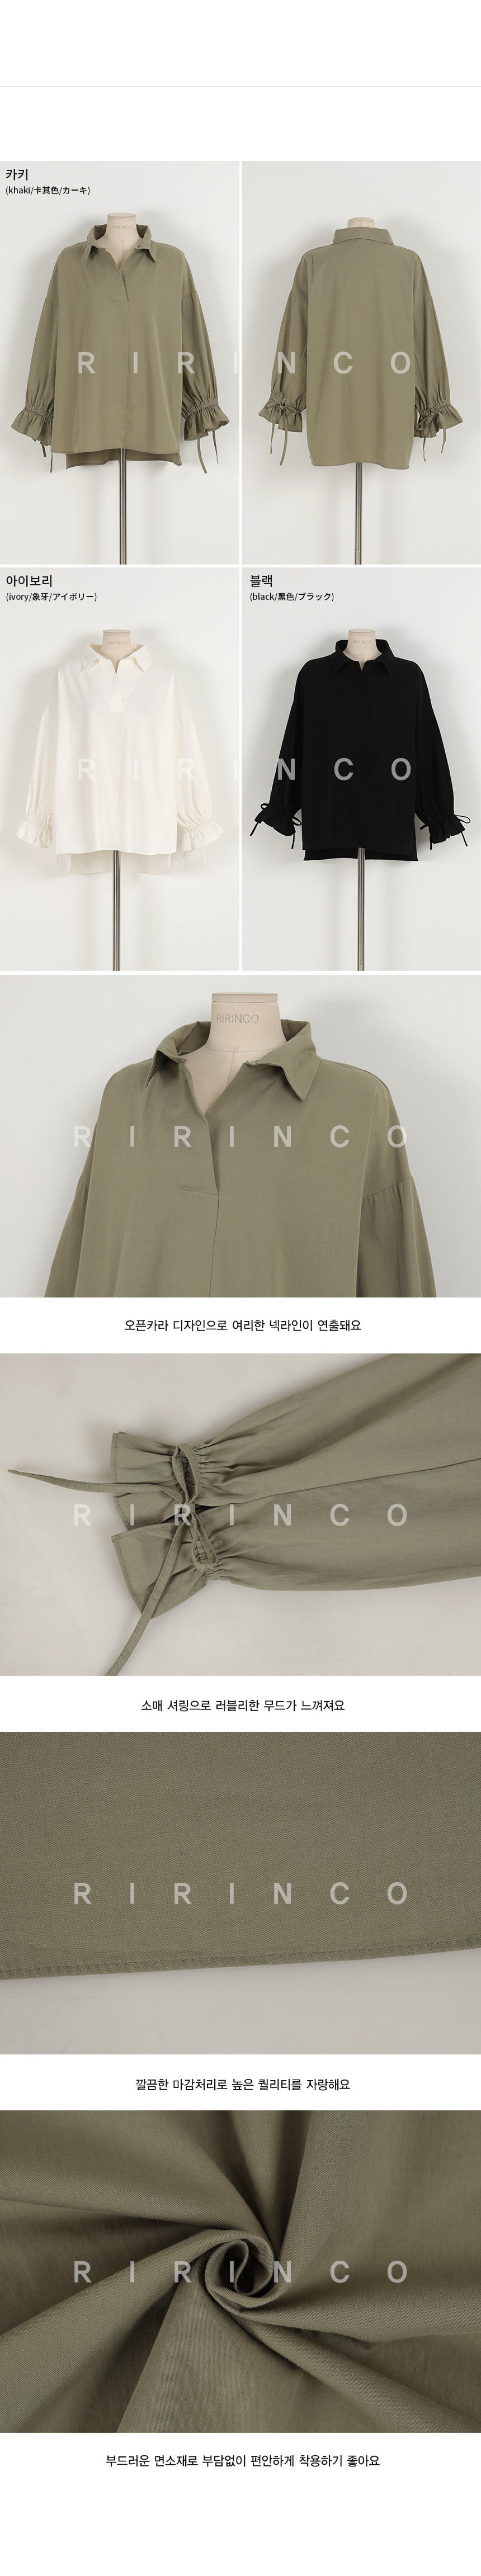 RIRINCO オープンカラーシャーリングシャツ